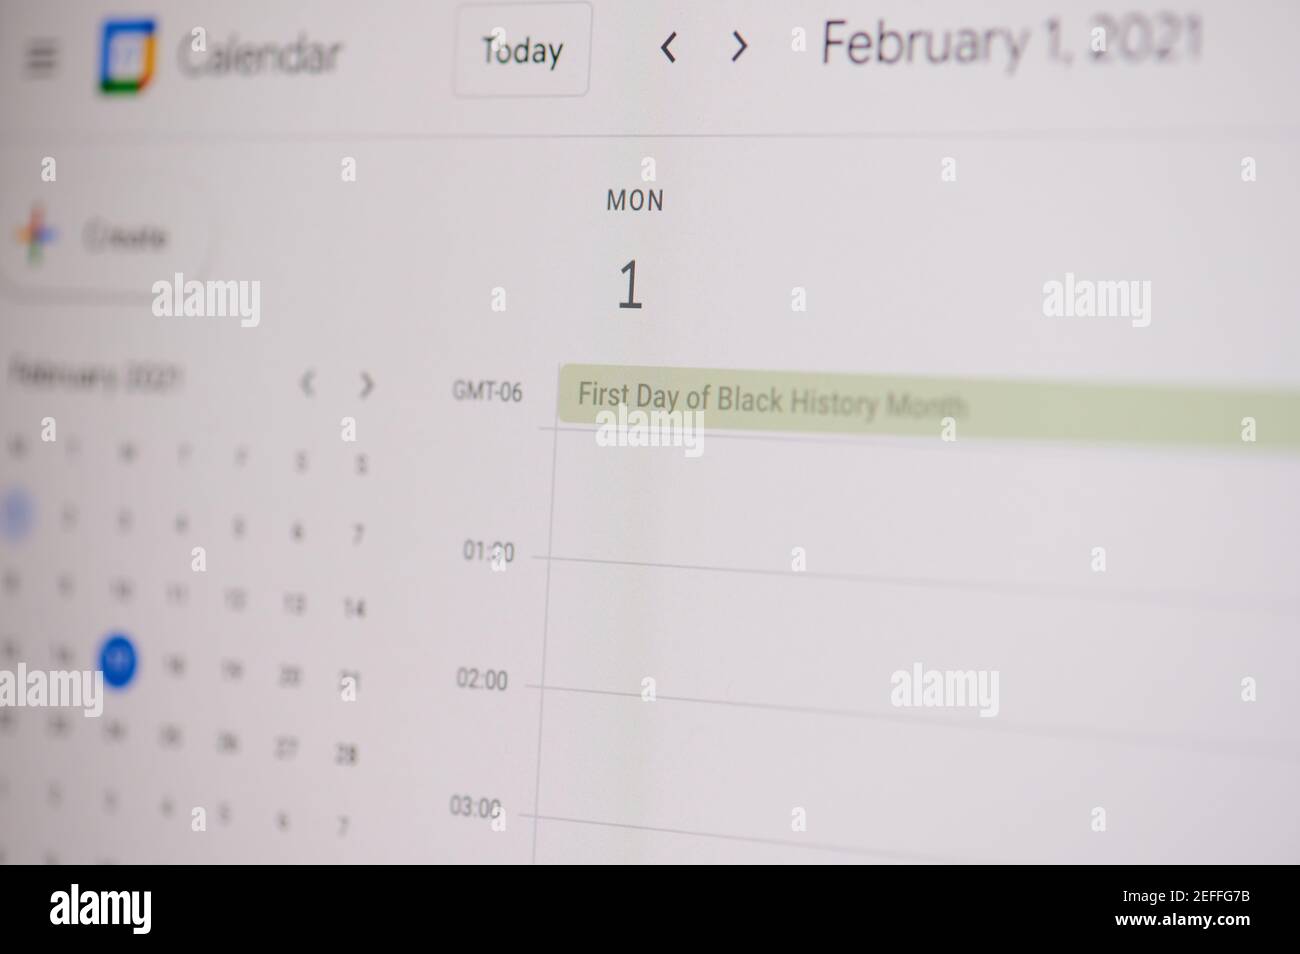 New york, USA - 17. Februar 2021: Erster Tag der schwarzen Geschichte 1. februar auf google Kalender auf Laptop-Bildschirm Nahaufnahme. Stockfoto